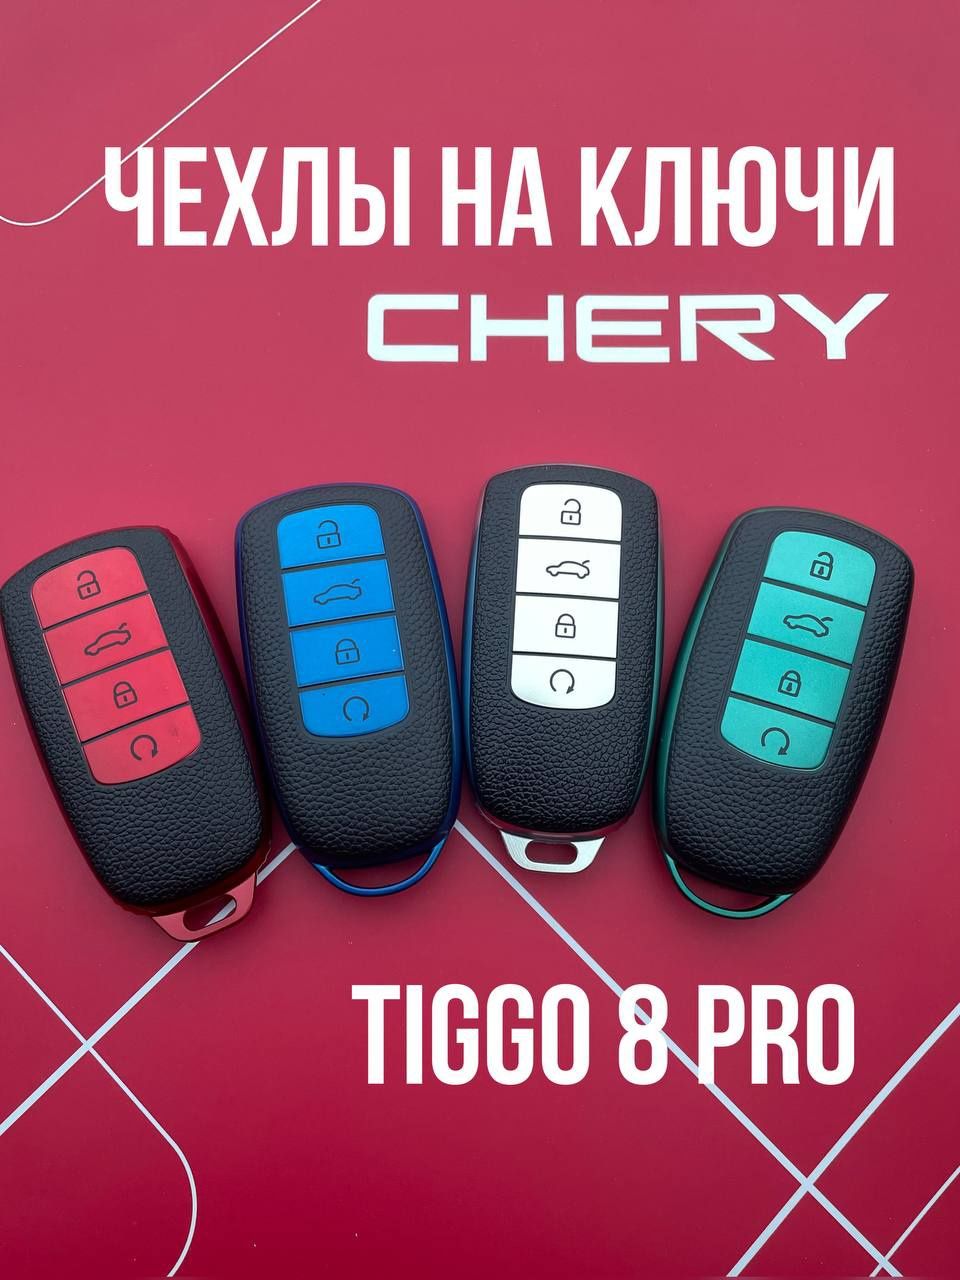 Chery Tiggo  Чехлы для ключей Чери тигго